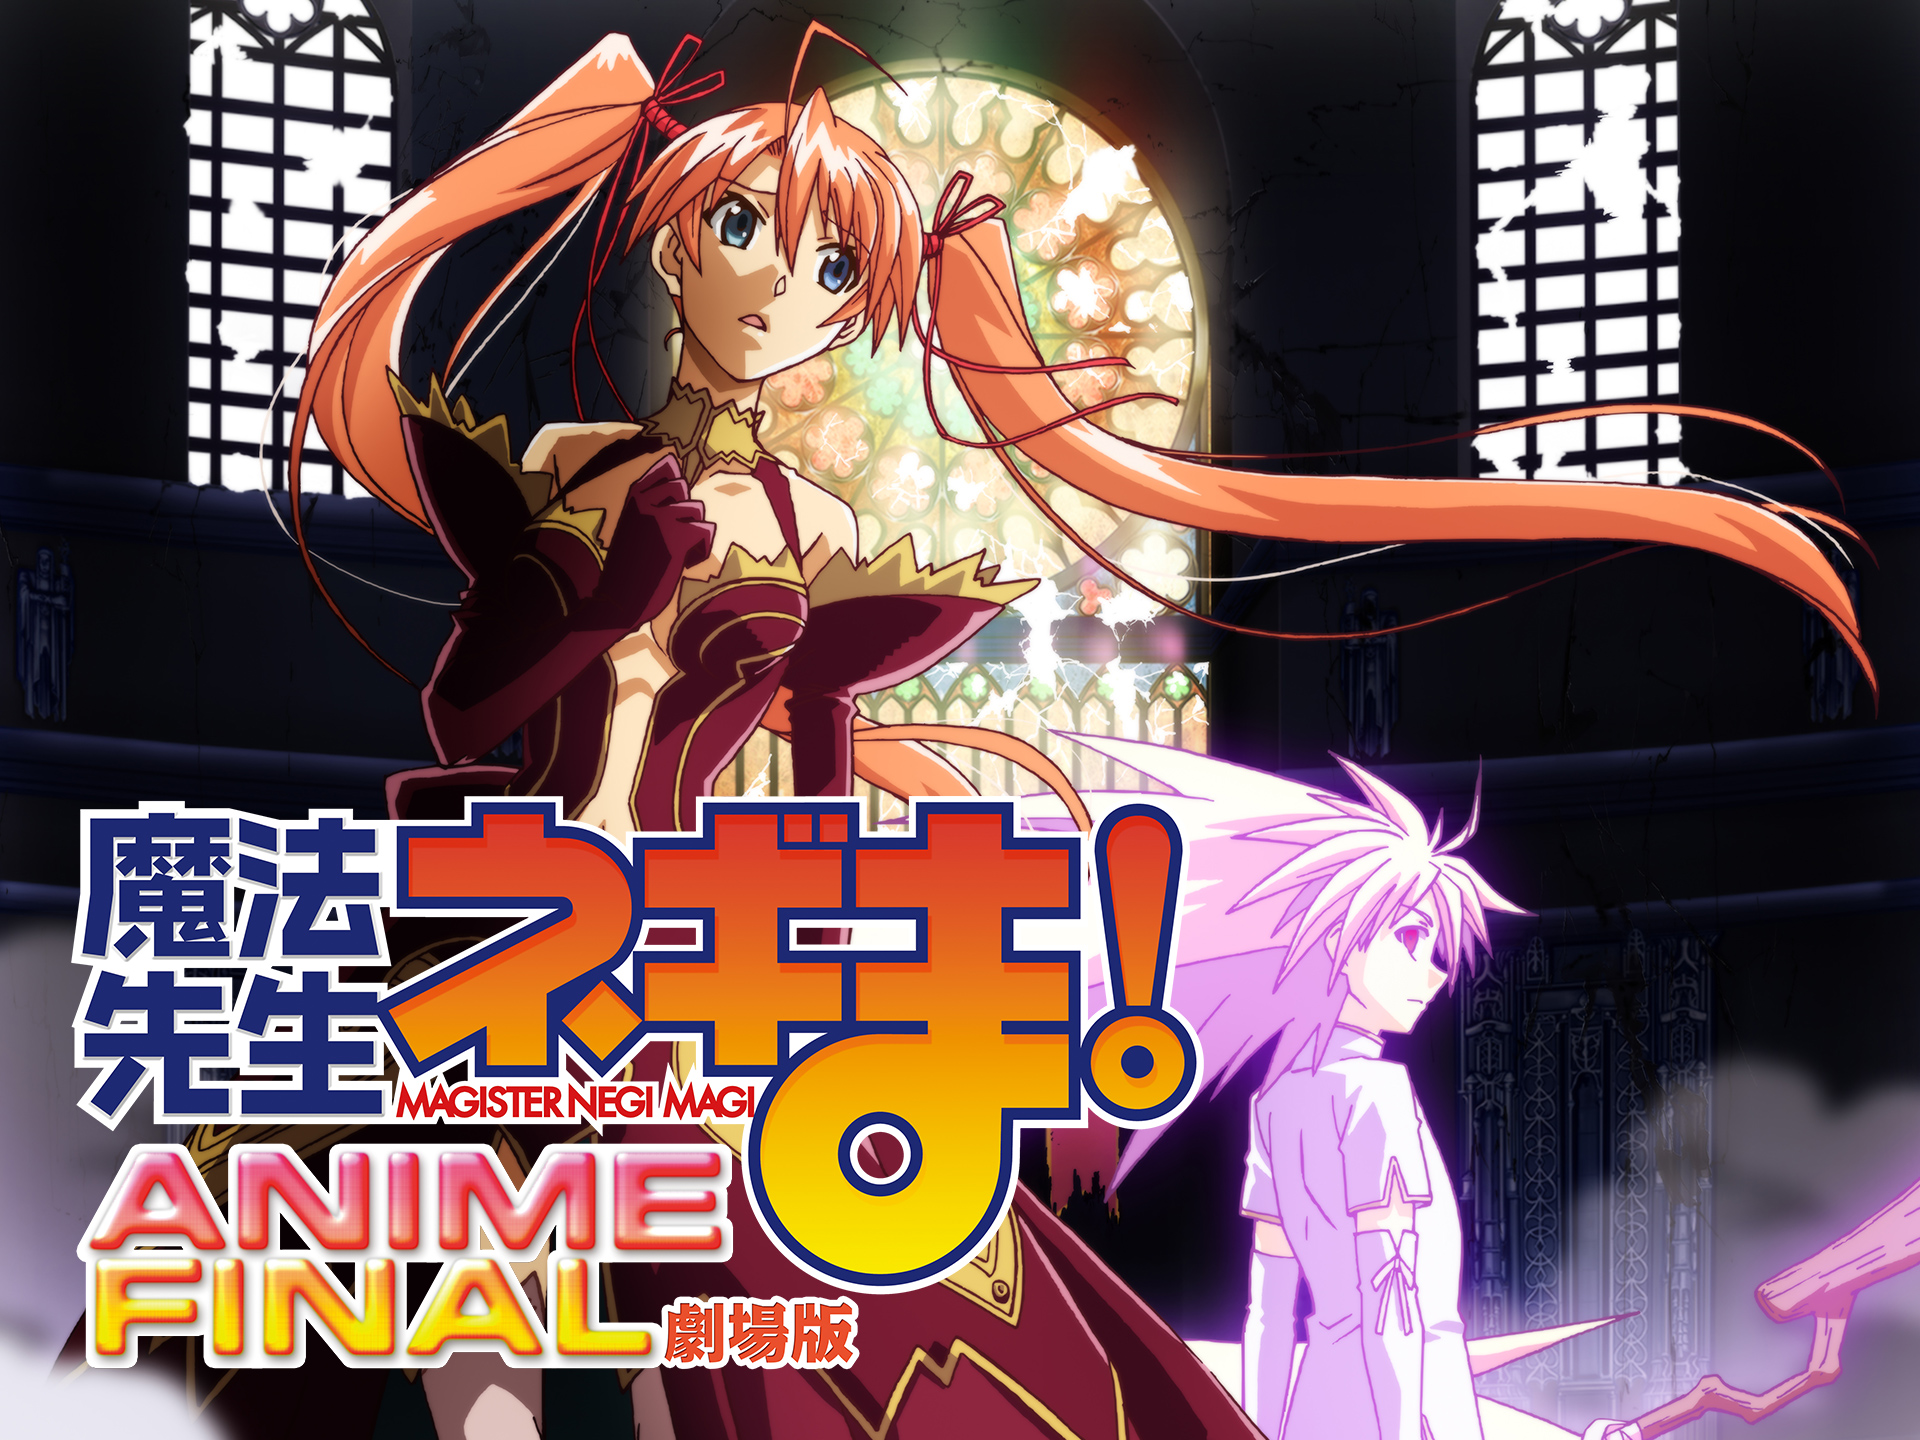 アニメ 劇場版 魔法先生ネギま Anime Final の動画 初月無料 動画配信サービスのビデオマーケット